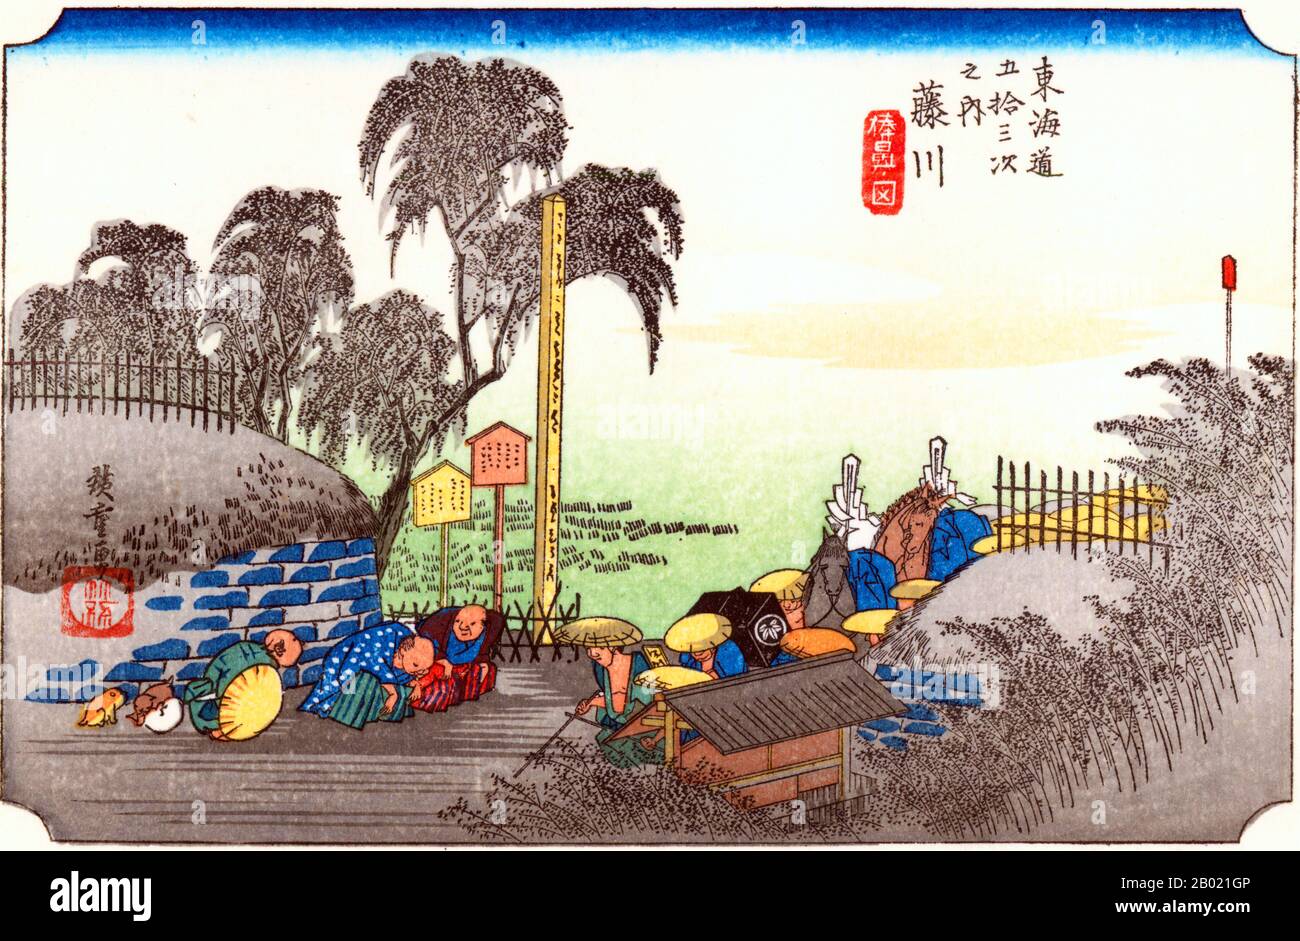 Fujikawa: Der Leiter einer Daimyo-Prozession am Eingang zu einem Dorf und drei Bauern, die beim Durchkommen gehorchen. Der häufigste Nutzer der Autobahn war der feudalherr mit seiner Retinue. Die Bürger, die über die Prozession kamen, mussten sich auf dem Boden niederkneten, um ihren Respekt zu zollen und dort zu bleiben, bis die Prozession vorüber war. Utagawa Hiroshige (歌川 広重, * um die Welt der Künstler) (* um die Welt der  ; † 12. Oktober 1858) war ein japanischer Ukiyo-e-Künstler und einer der letzten großen Künstler dieser Tradition. Er wurde auch als Andō Hiroshige (安藤 広重) (eine unregelmäßige Kombination von Familiennamen und Kunstnamen) und von der Art n Stockfoto